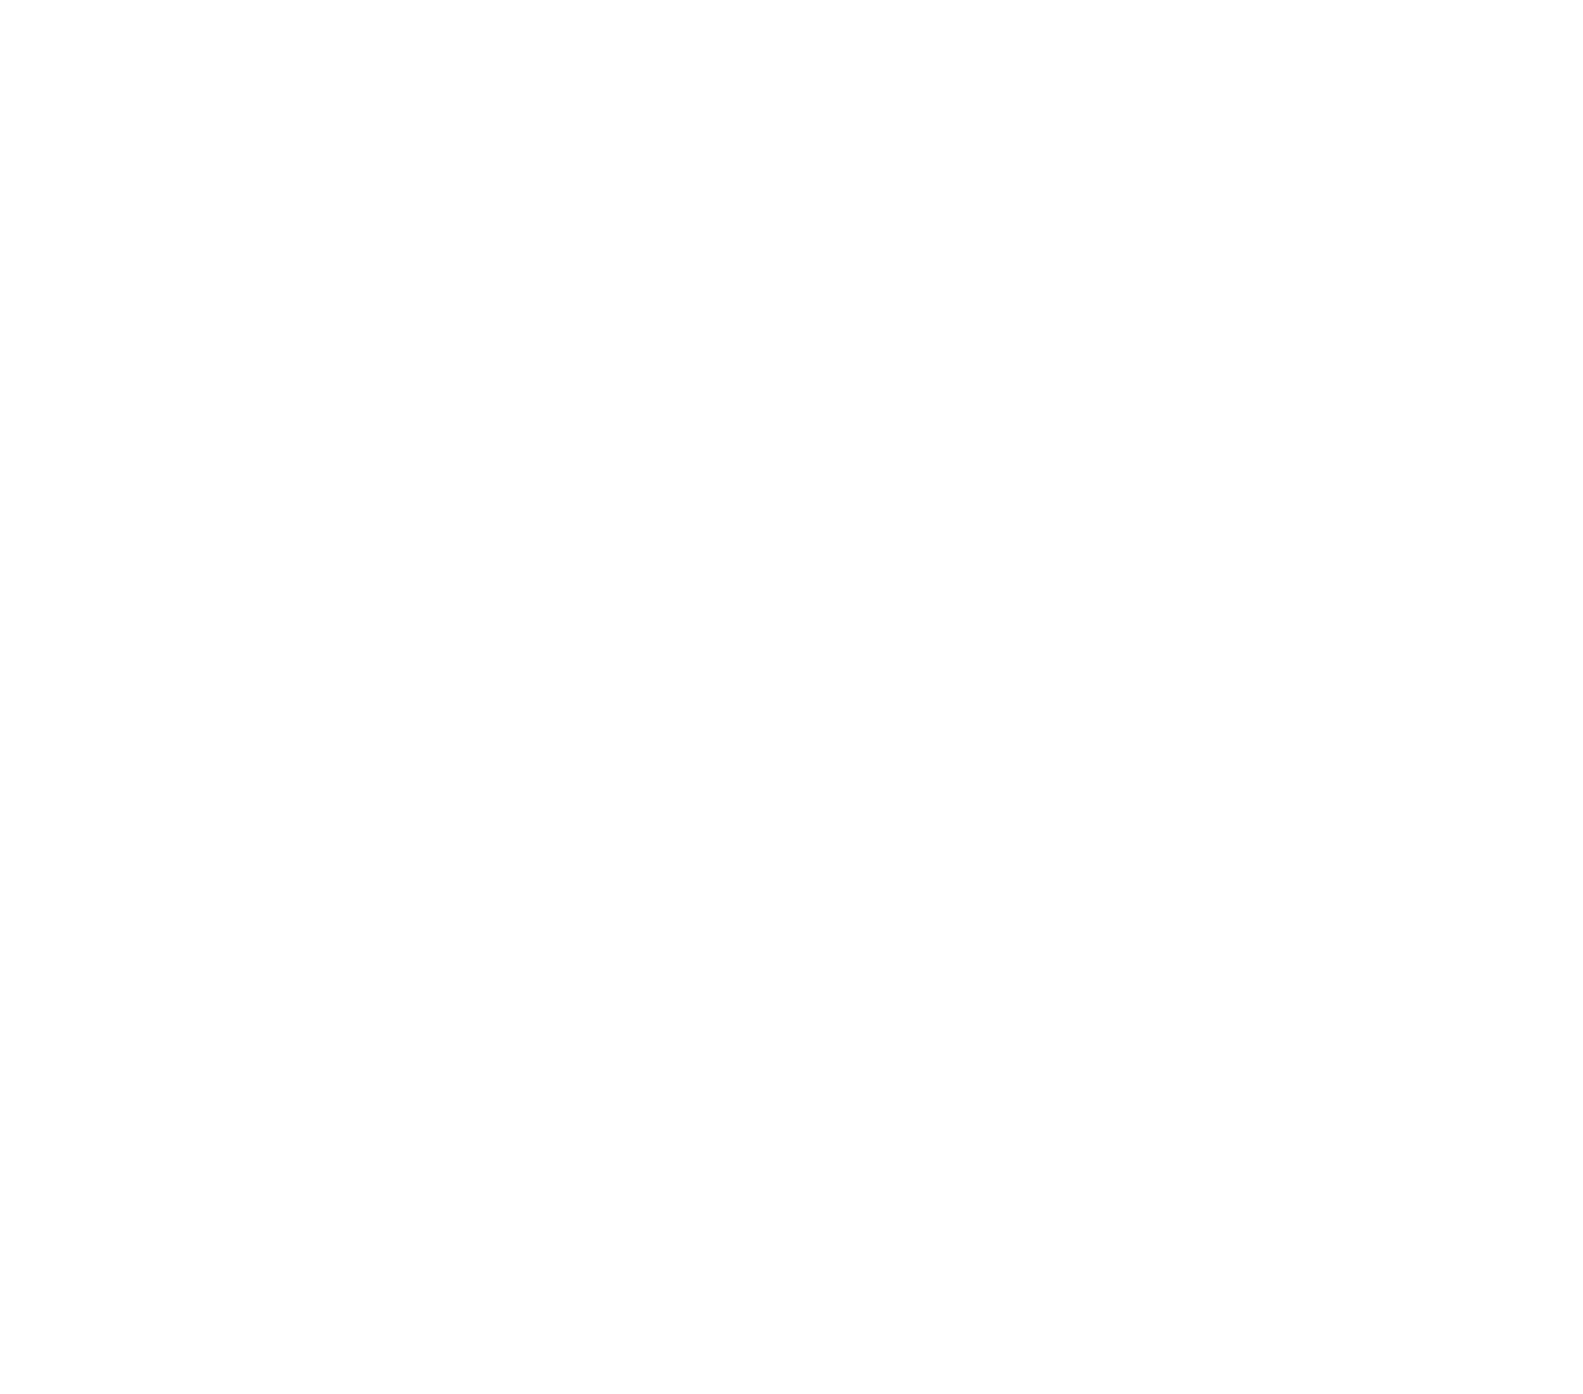 Svenska Cellulosa Aktiebolaget (SCA) logo for dark backgrounds (transparent PNG)